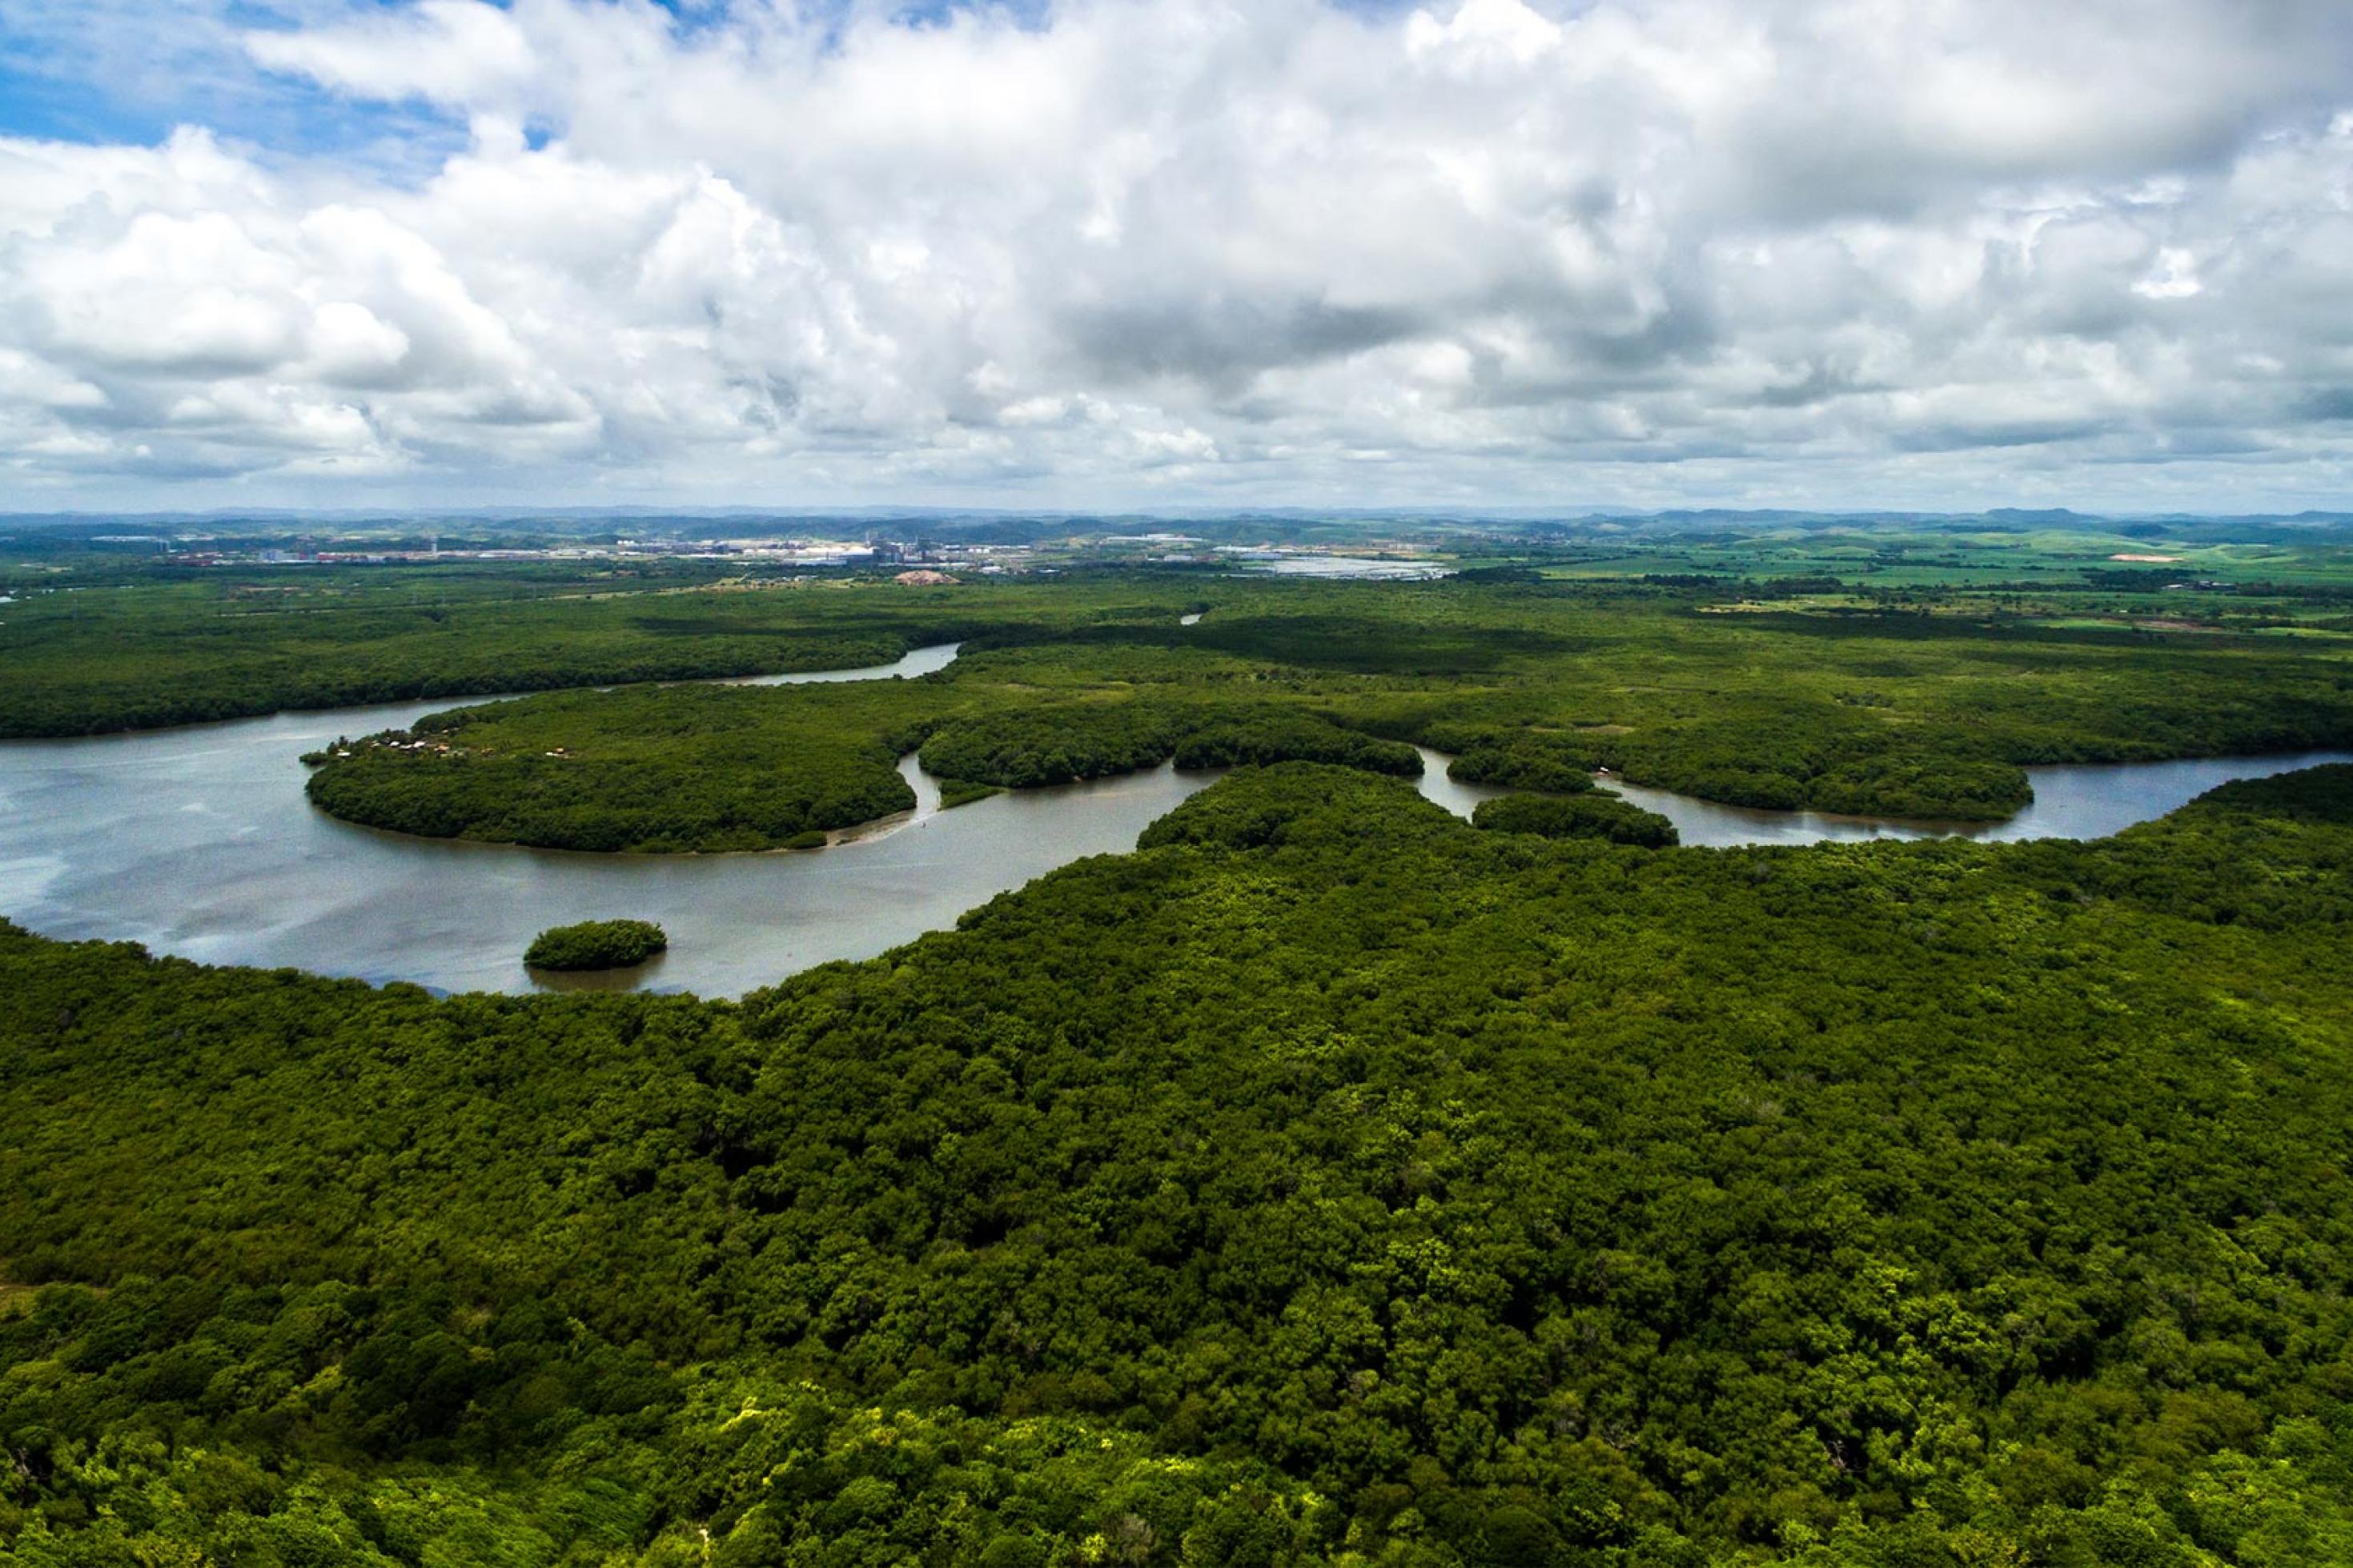 Luftbild eines Regenwalds, der von einem Fluss durchflossen wird.